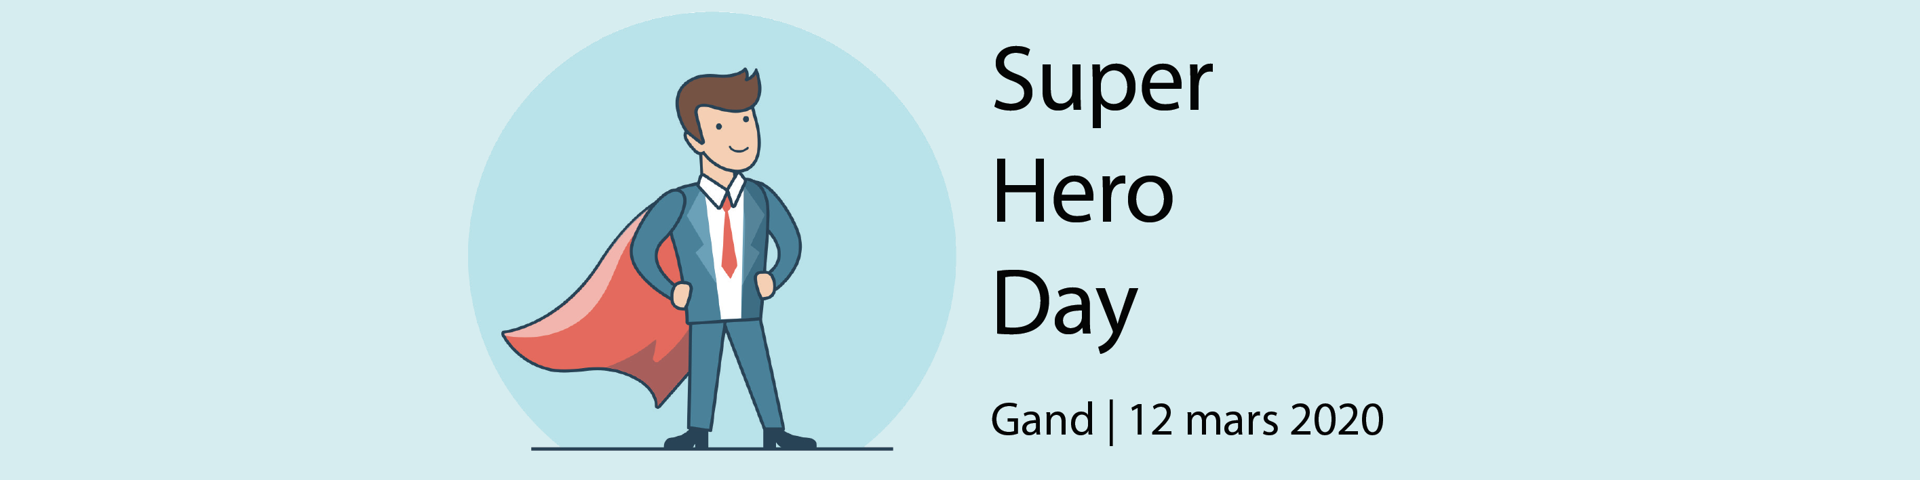 Intrum Super Hero Day 2020